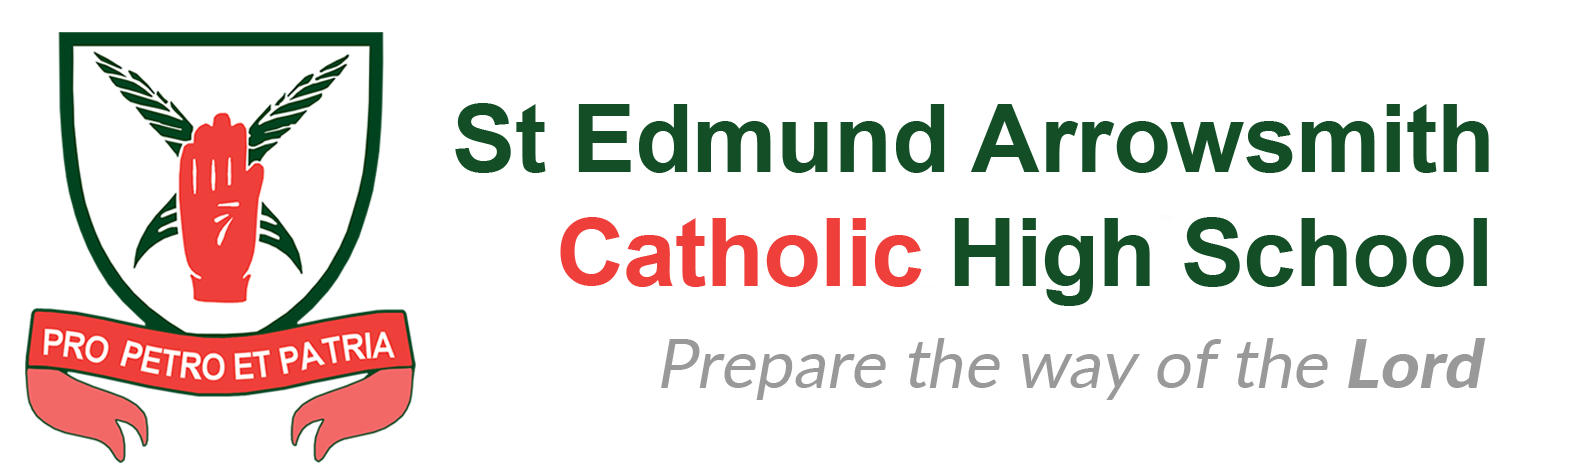 St Edmund Arrowsmith Catholic High School